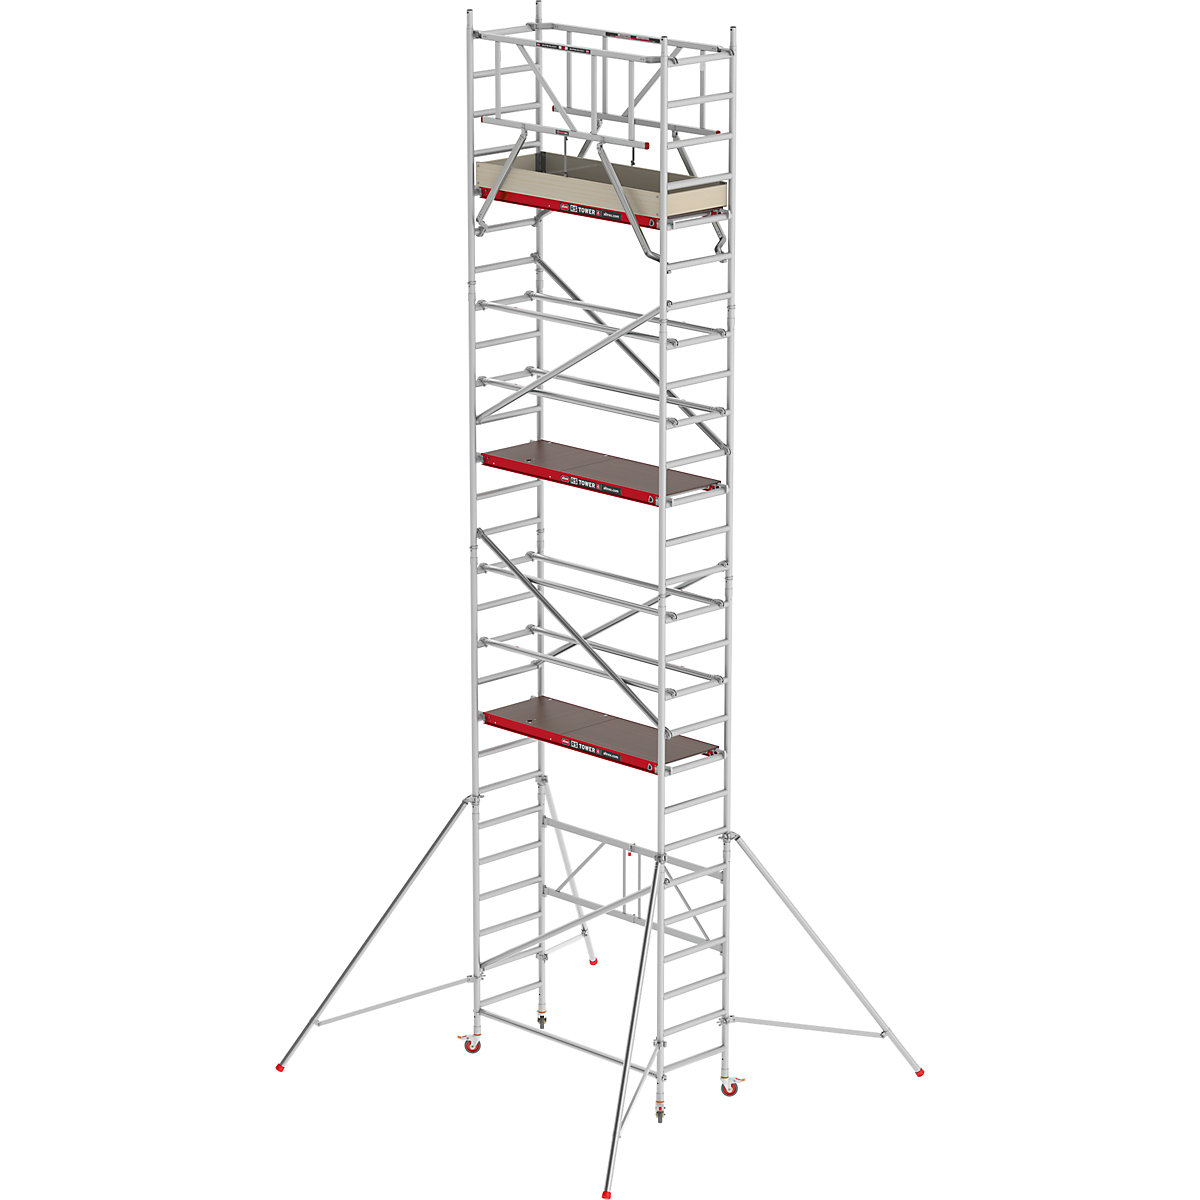 Zimmergerüst RS 44-POWER Altrex, Holzplattform, Länge 1,85 m, Arbeitshöhe 8,80 m